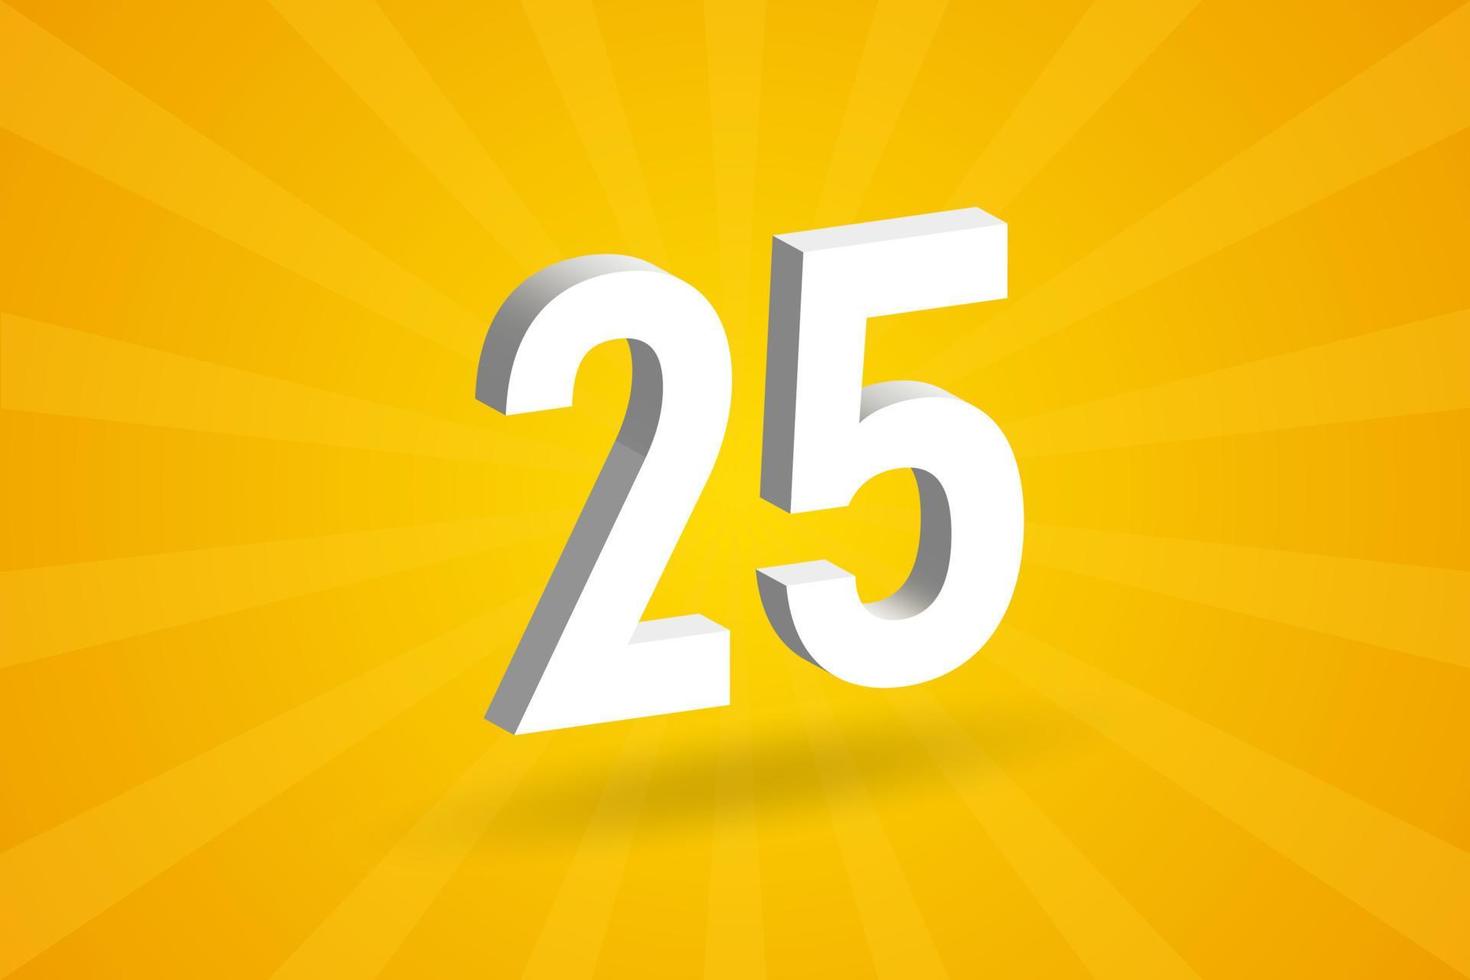 alfabeto de fonte de 25 números 3D. branco 3d número 25 com fundo amarelo vetor